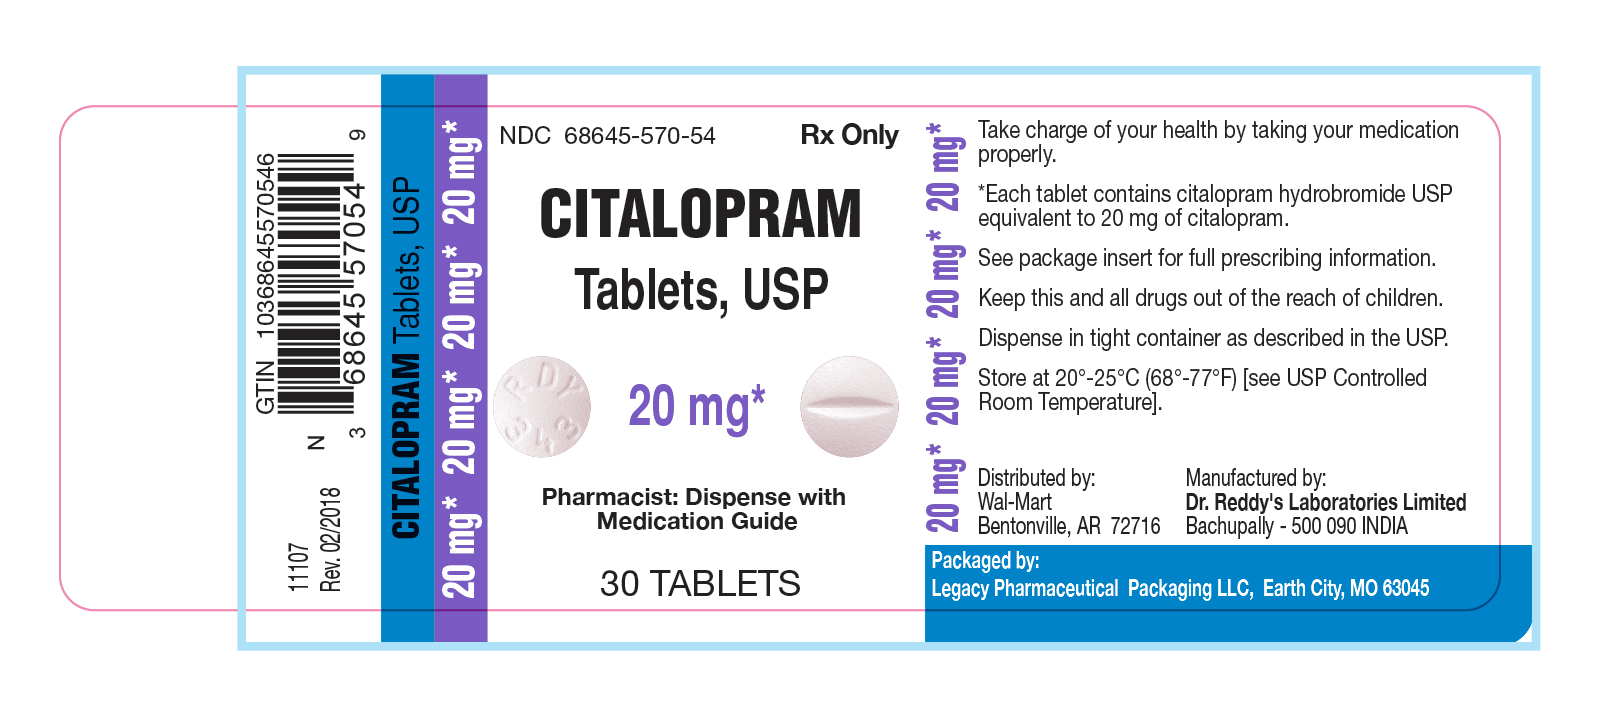 Citalopram Tablets, USP 20 mg